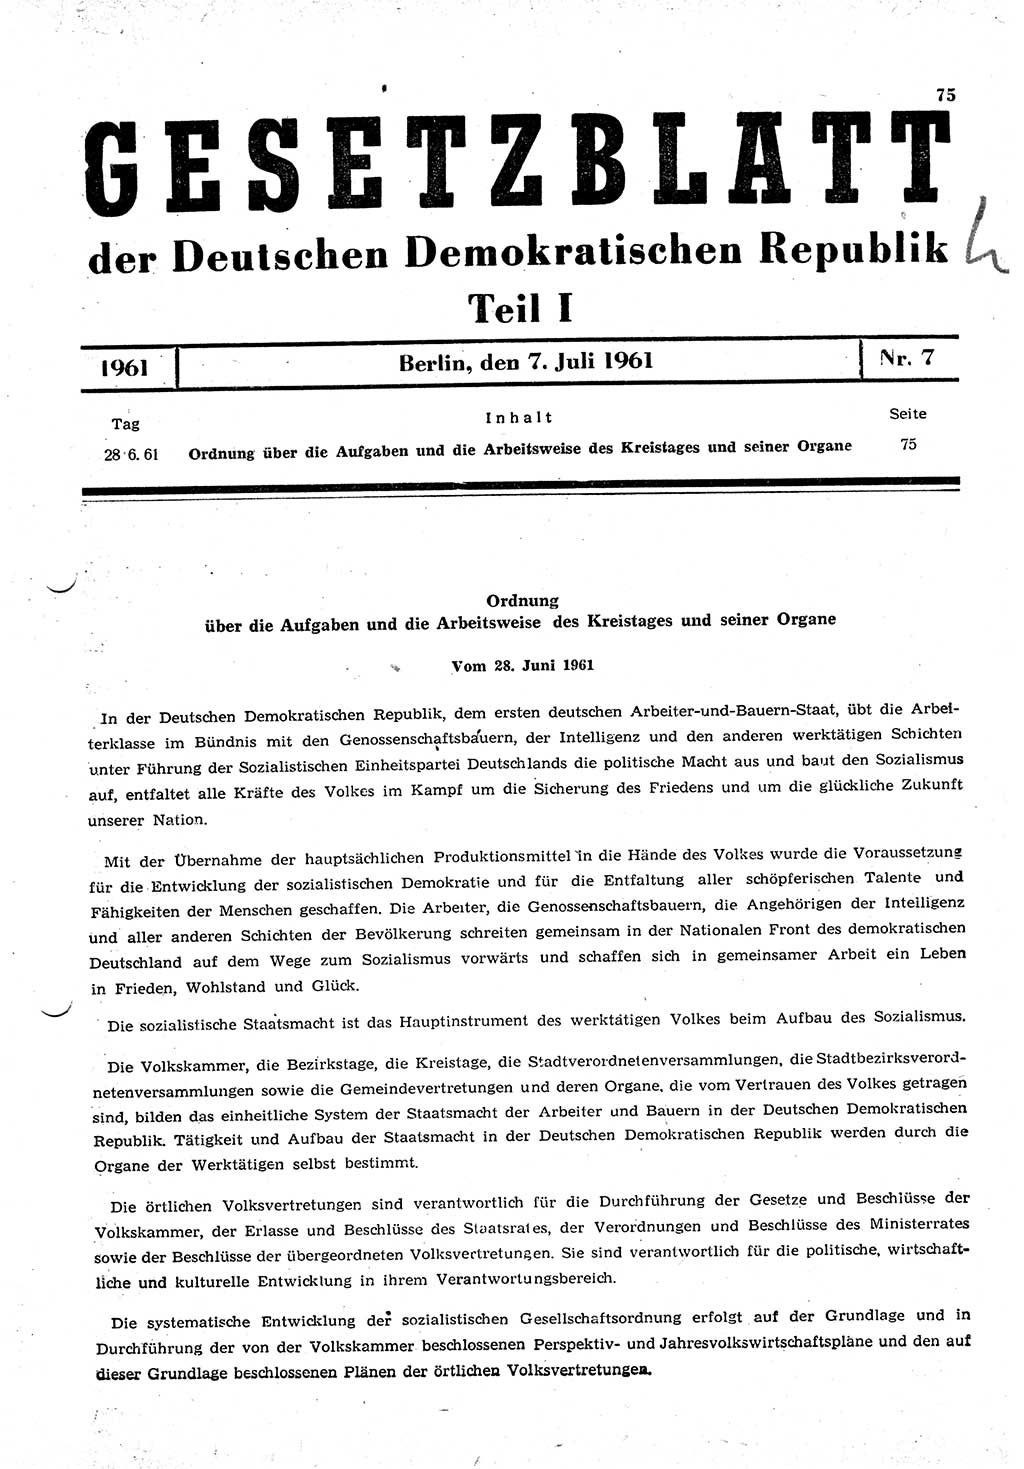 Gesetzblatt (GBl.) der Deutschen Demokratischen Republik (DDR) Teil Ⅰ 1961, Seite 75 (GBl. DDR Ⅰ 1961, S. 75)